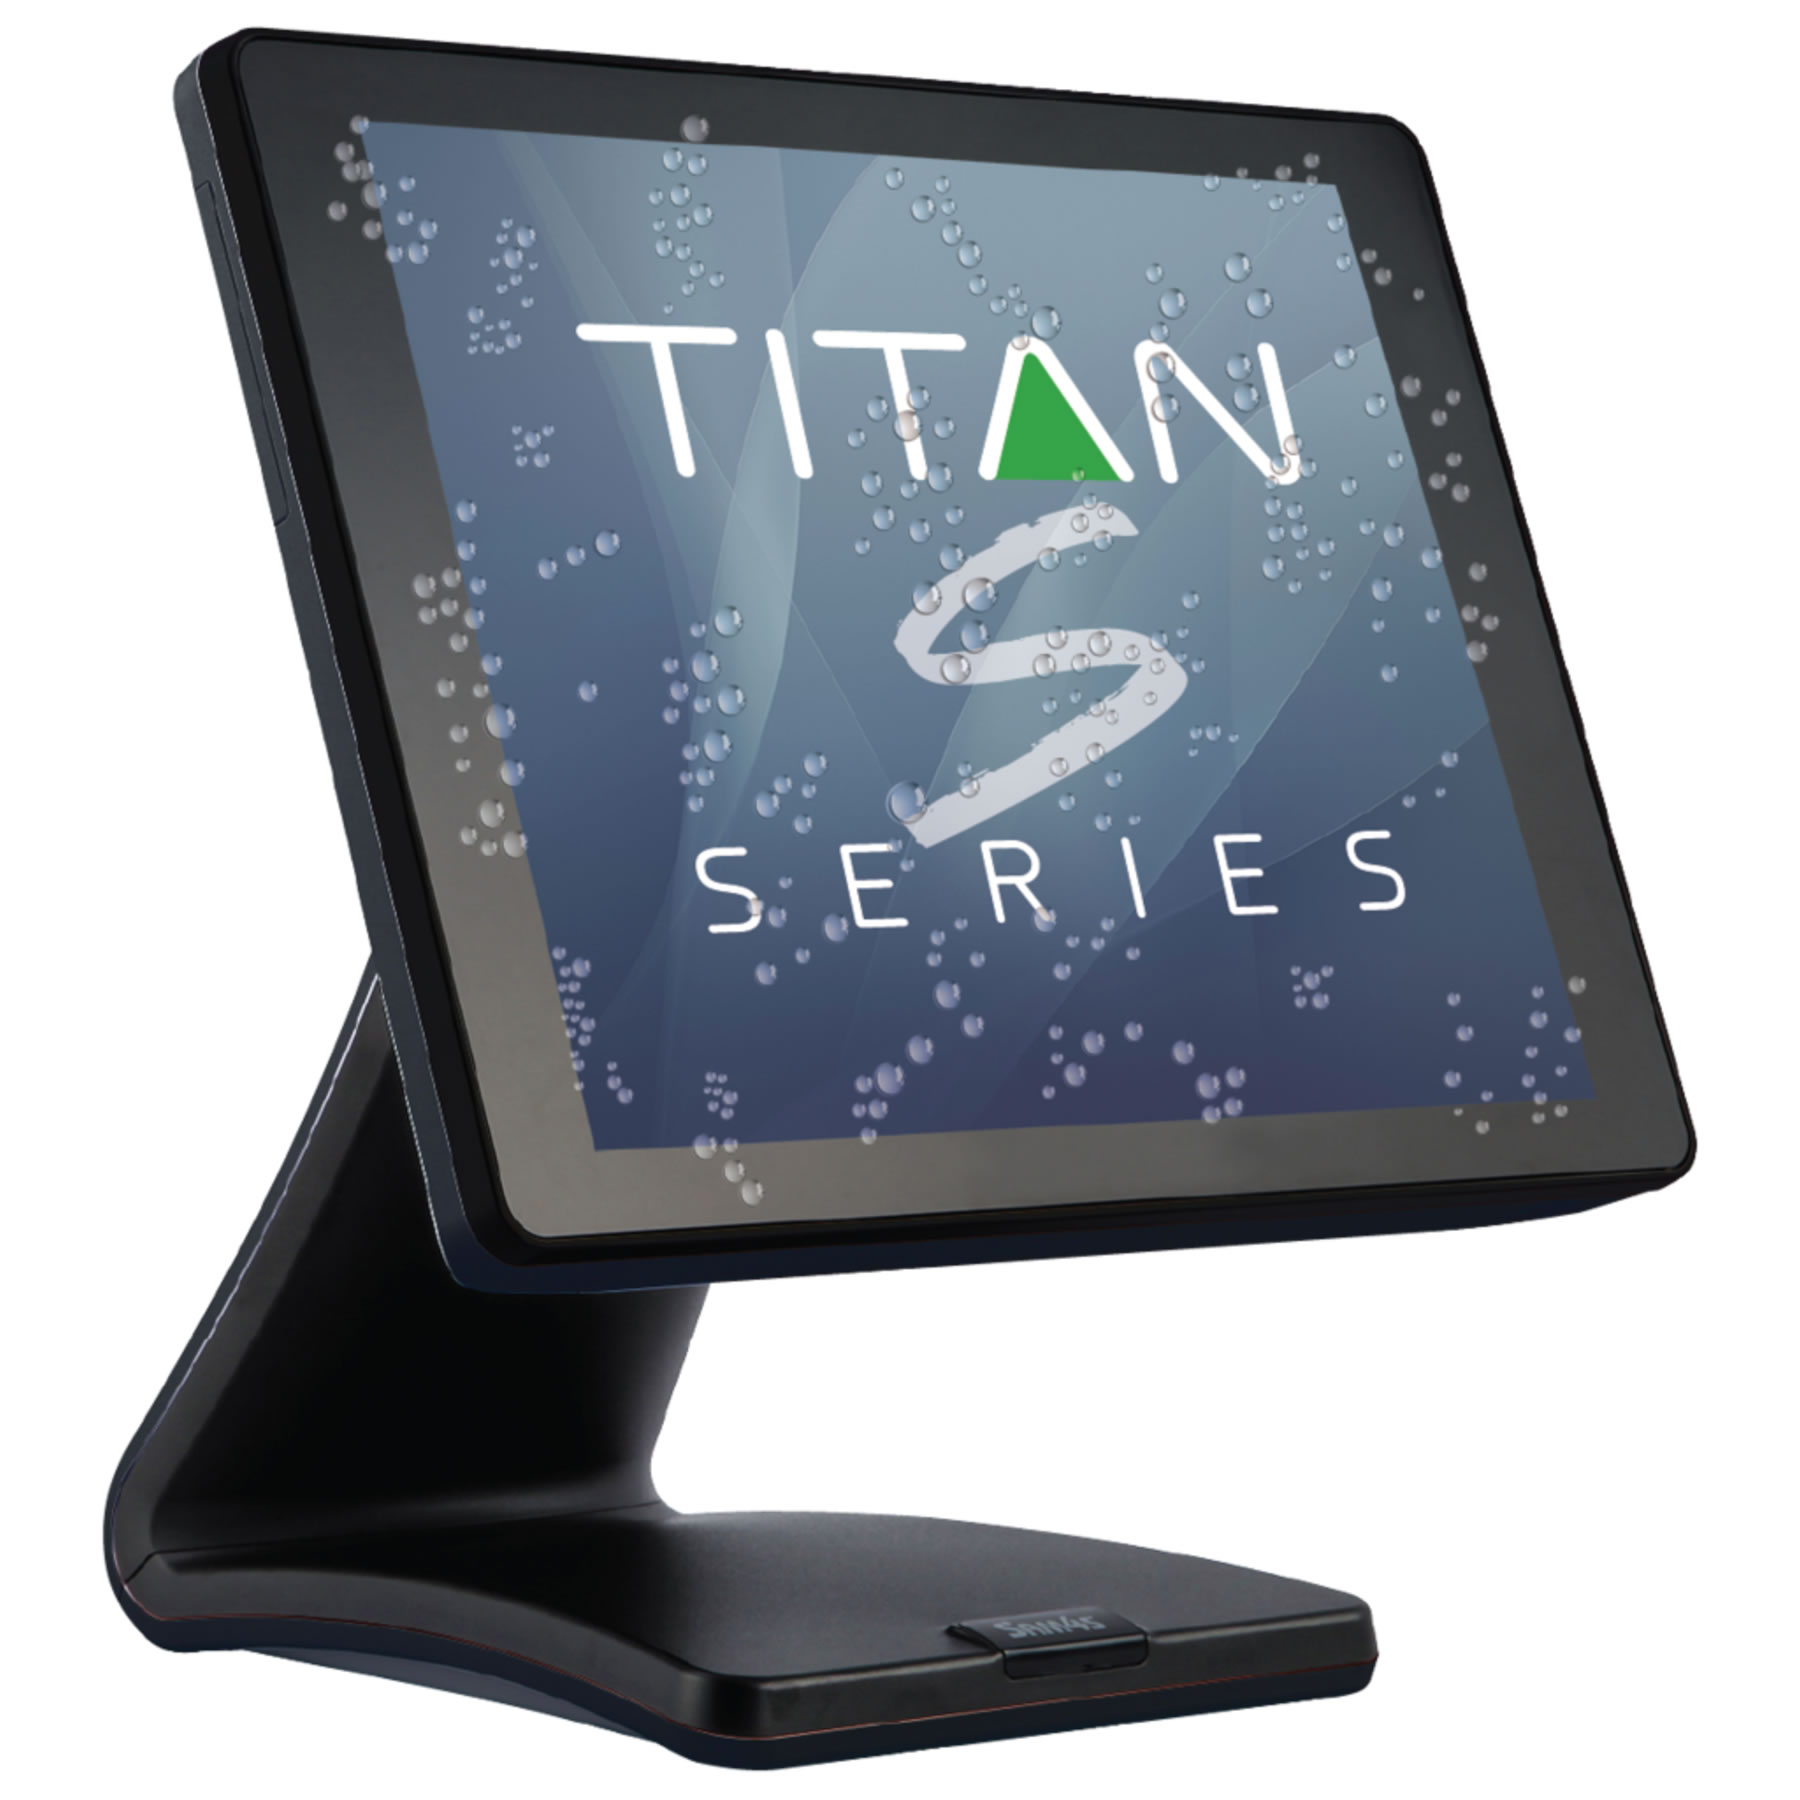 Titan S560 15" Touchscreen POS Terminal